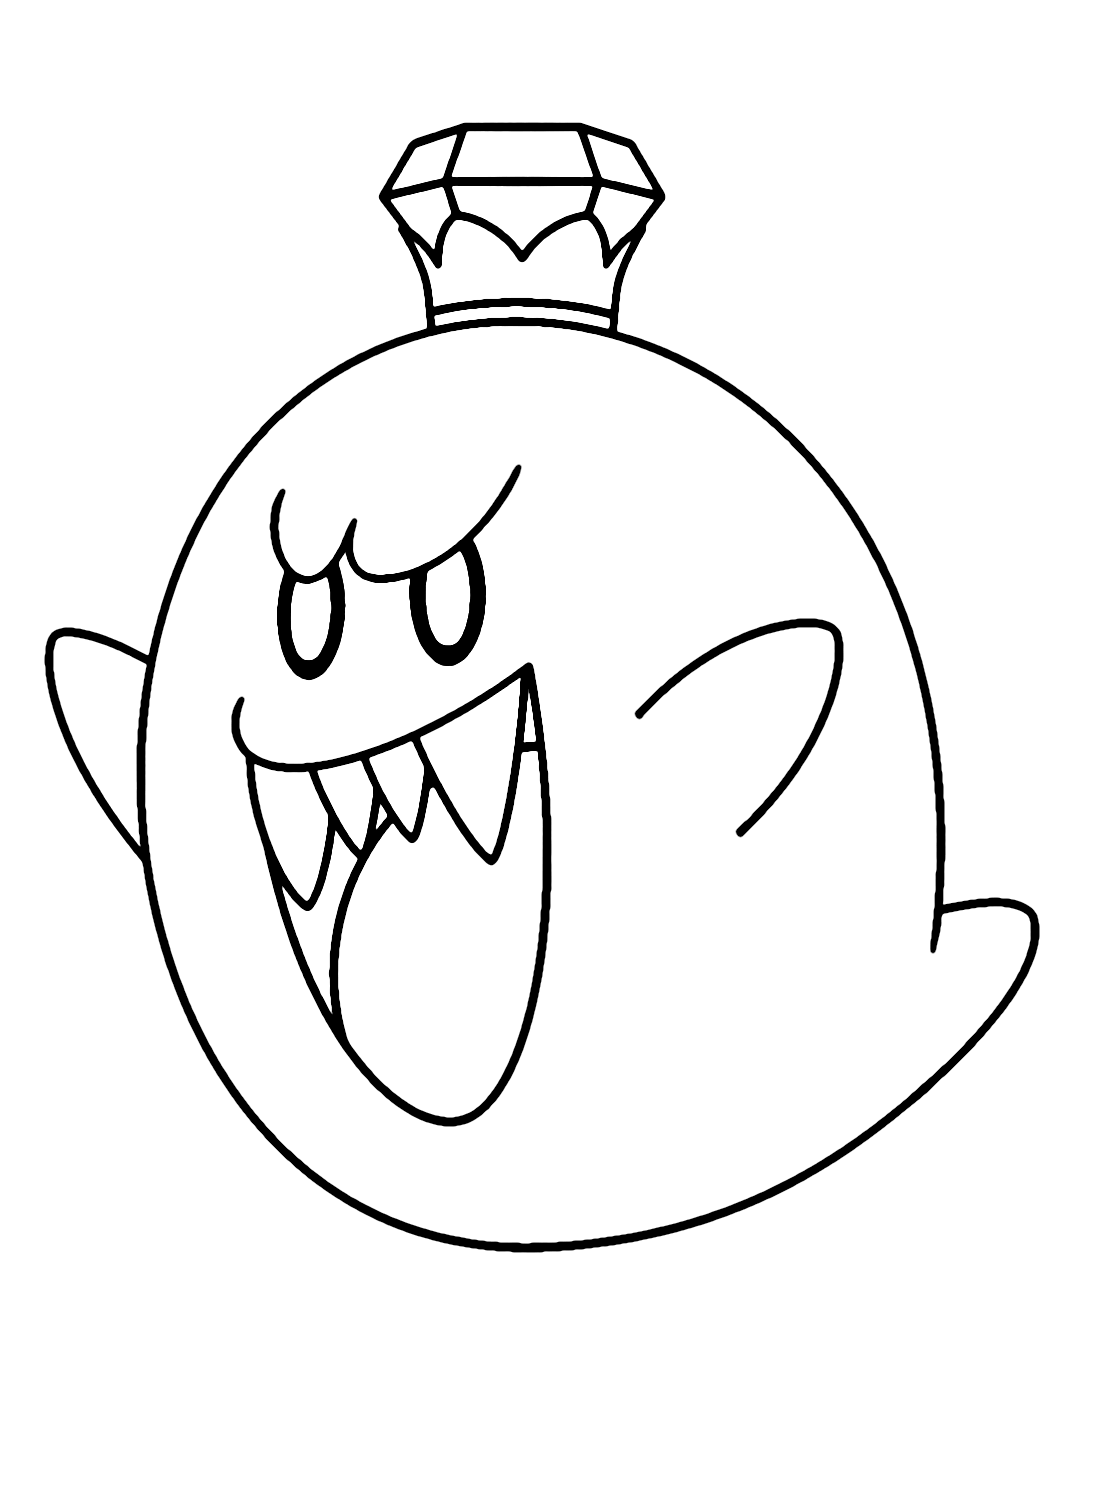 King Boo uit Super Mario van King Boo